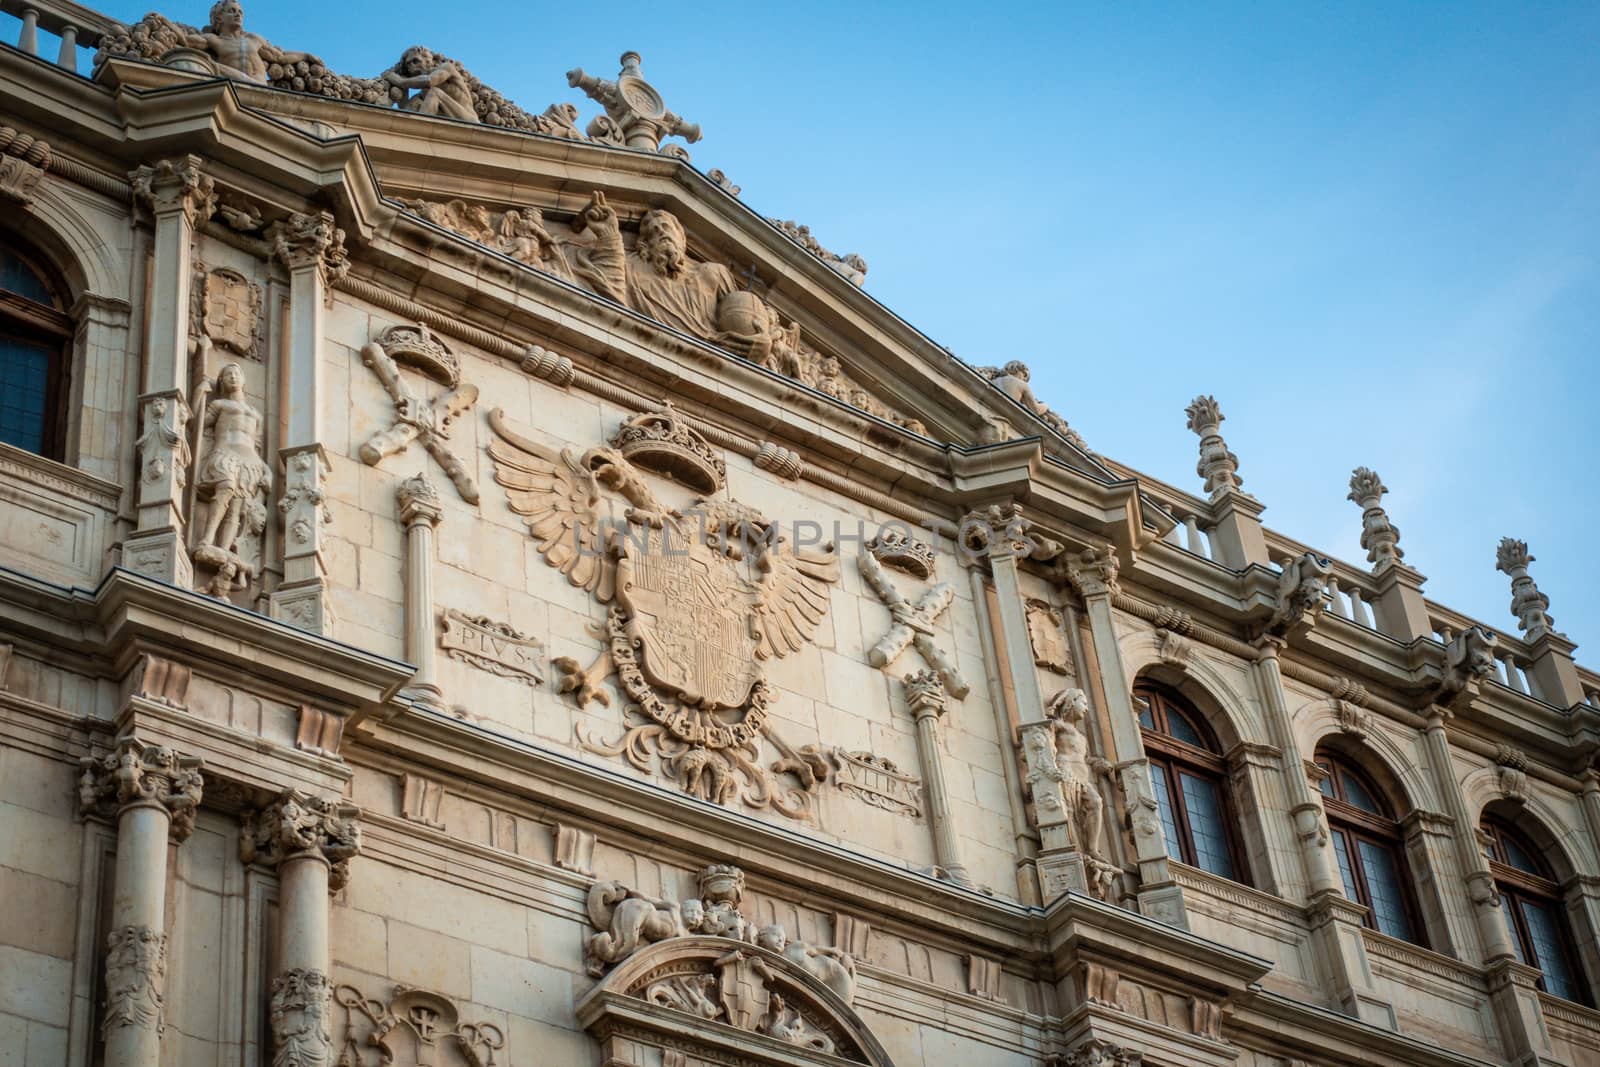 Detail of the facade of Colegio Mayor de San Ildefonso in Alcala de Henares, Spain by tanaonte